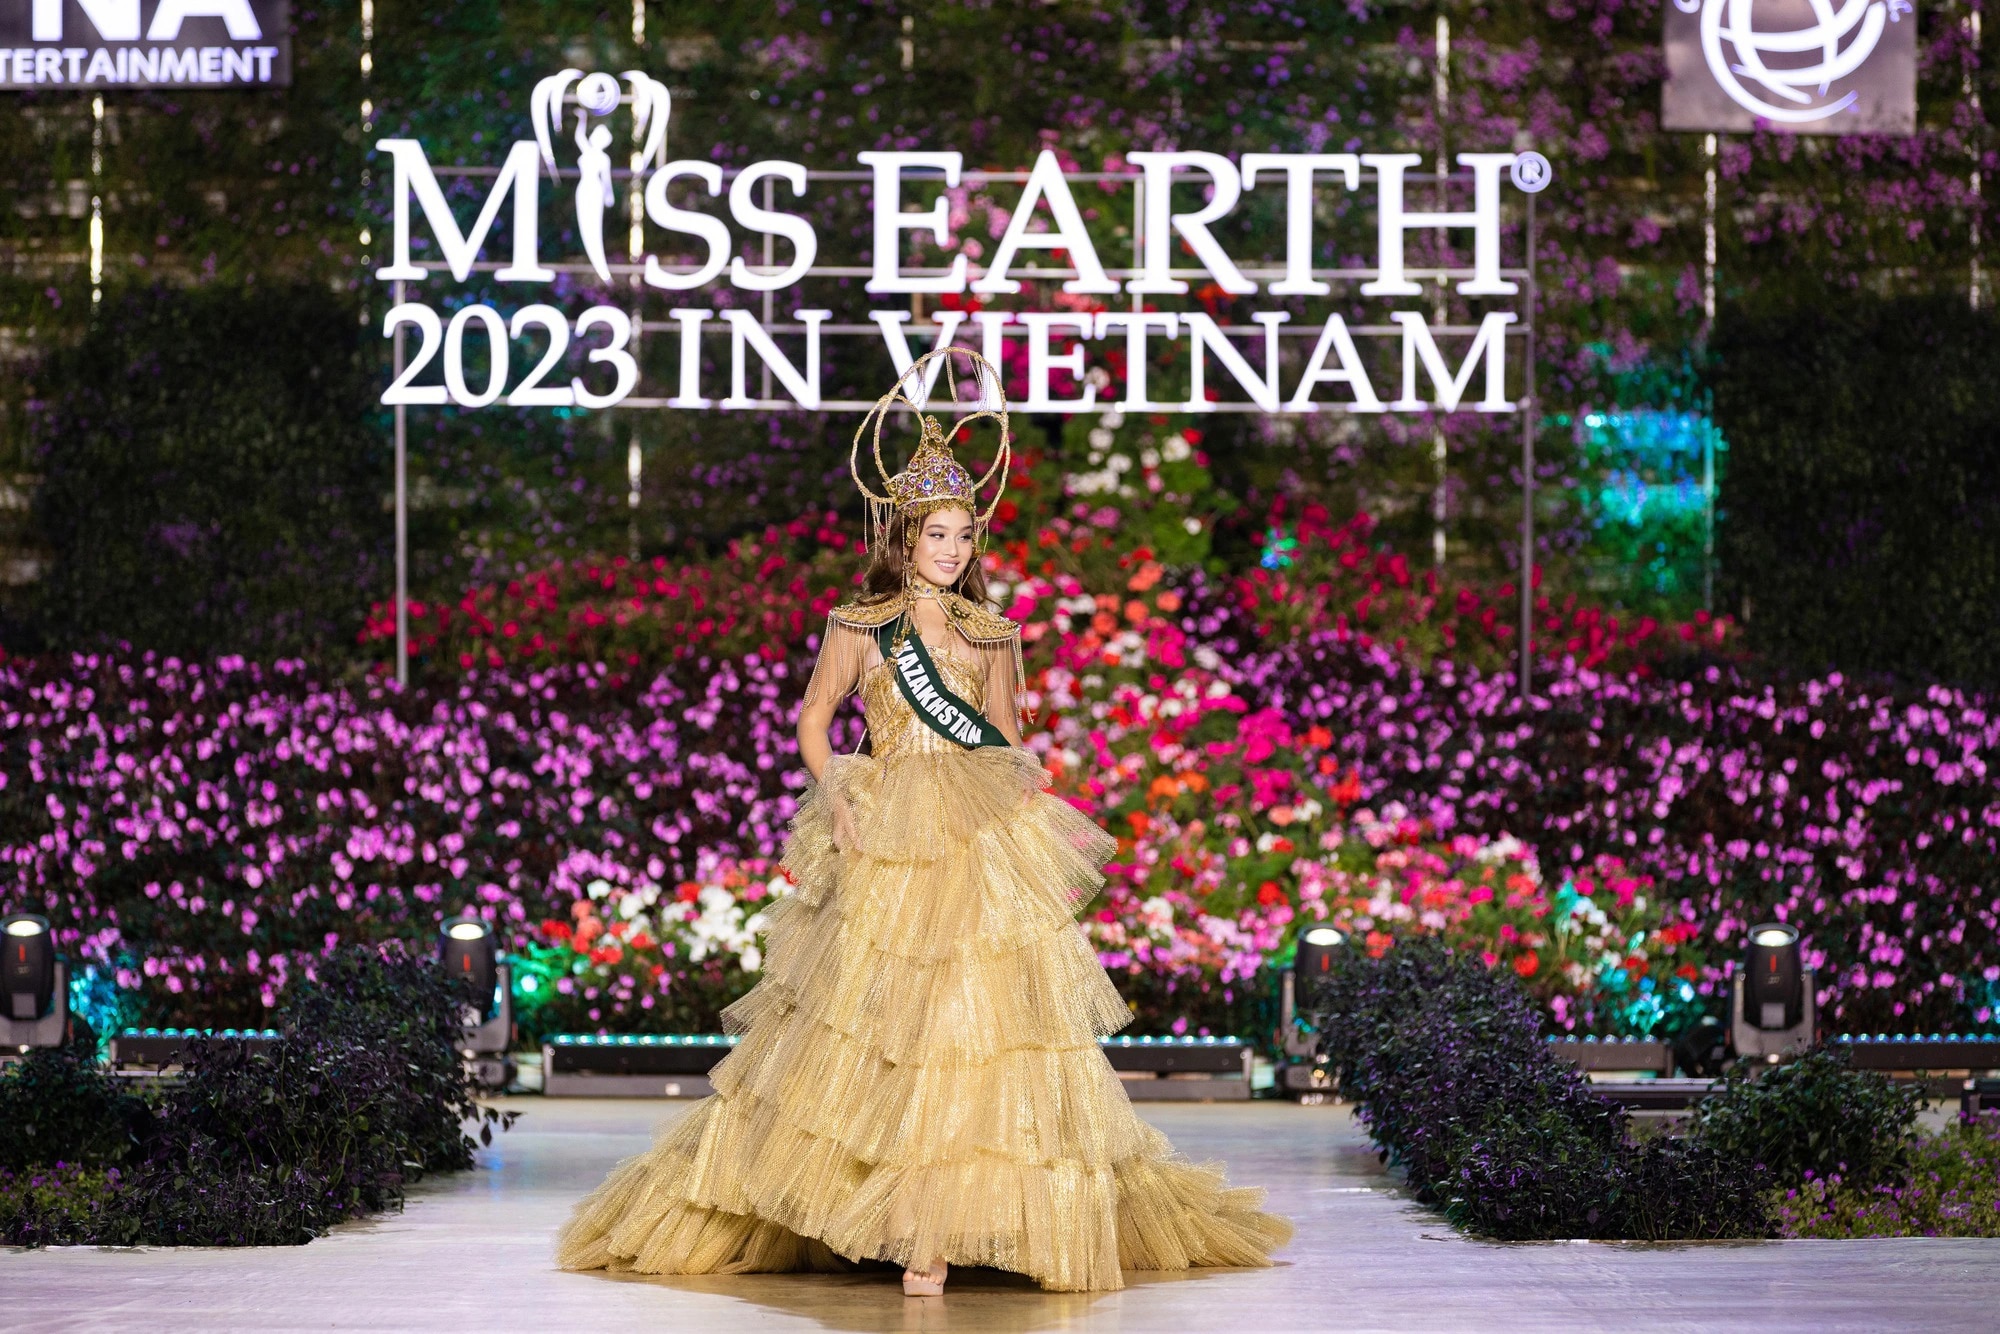 Bán kết Miss Earth 2023 màn trình Trang phục Dân tộc bùng nổ hình ảnh cỏ hoa, muông thú - Ảnh 21.